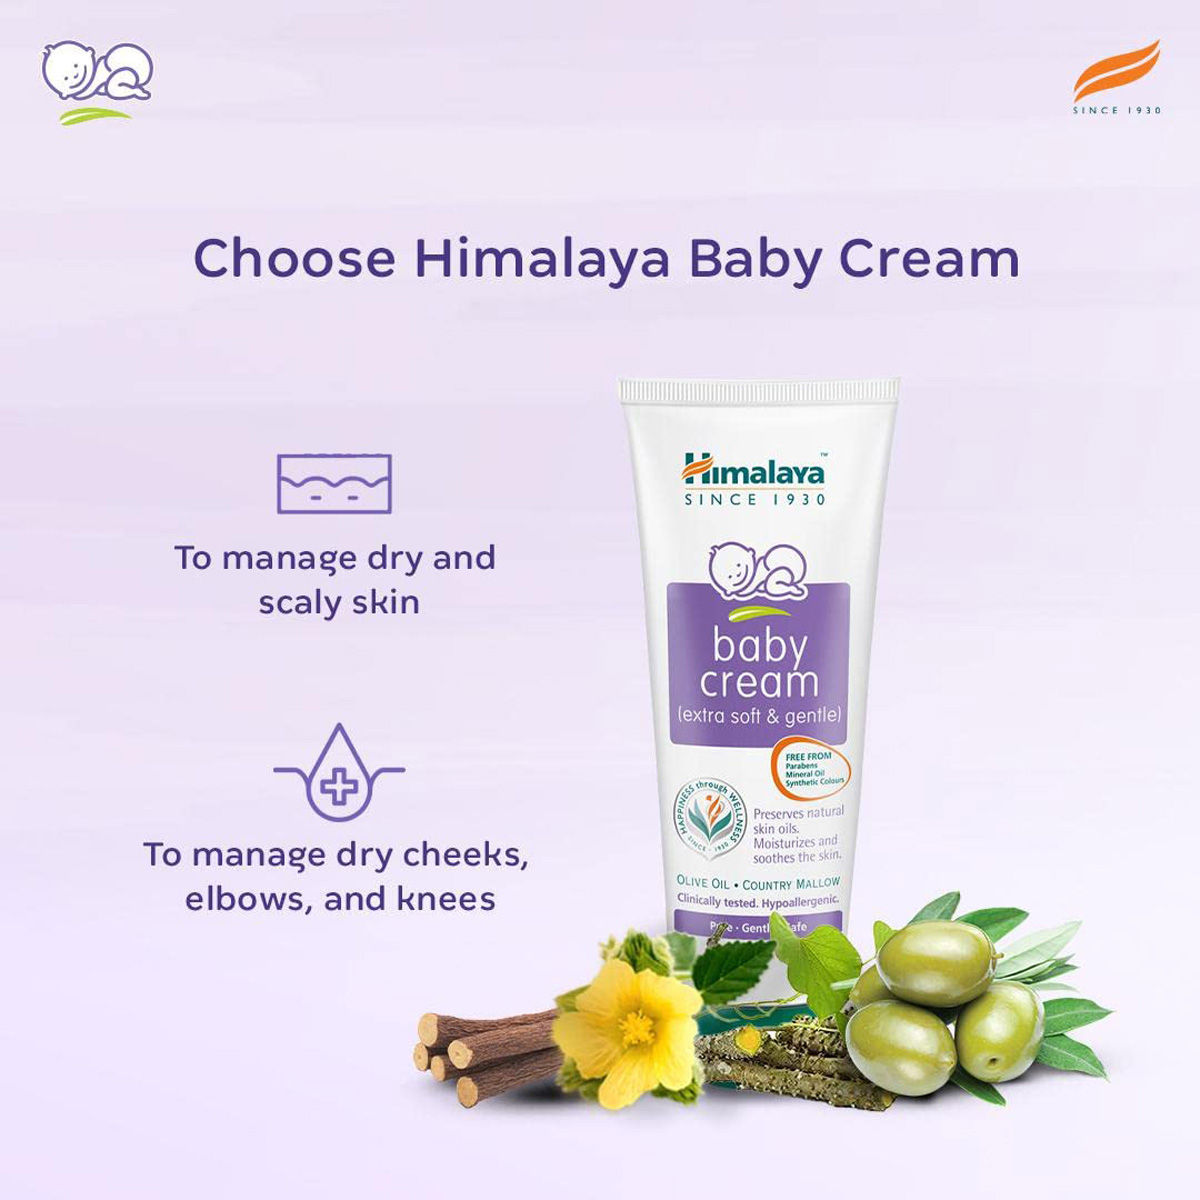 Himalaya Baby Cream, 50 ml, Pack of 1 